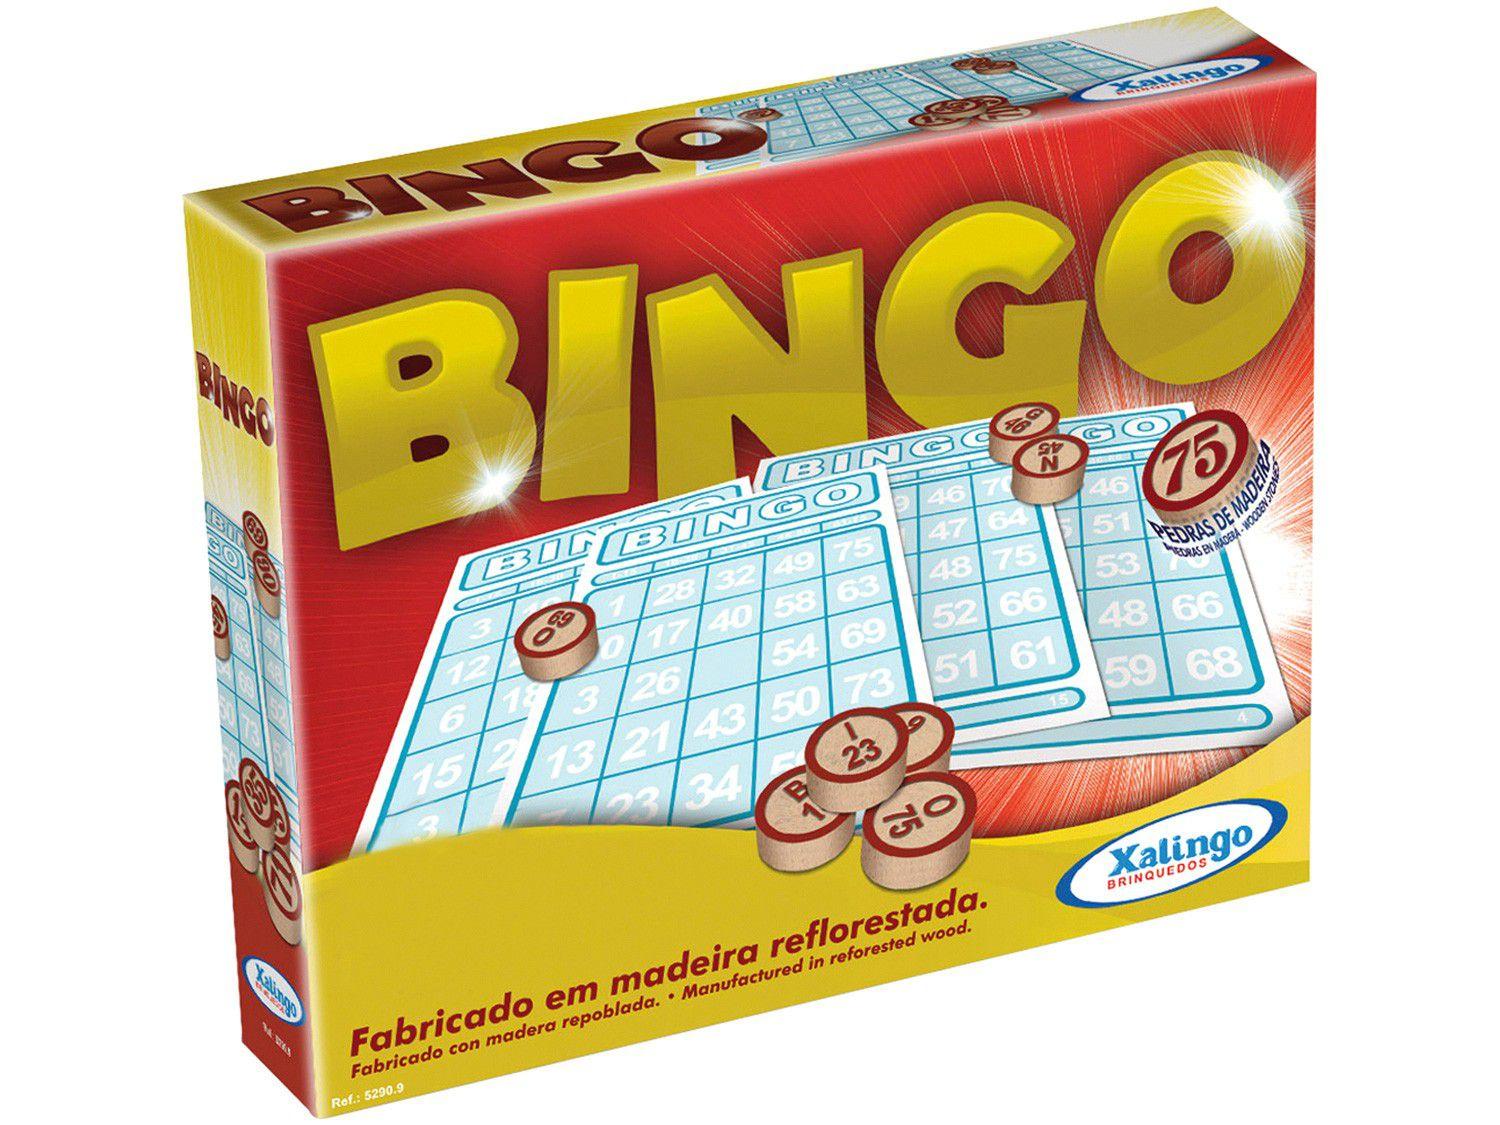 bingo online ao vivo